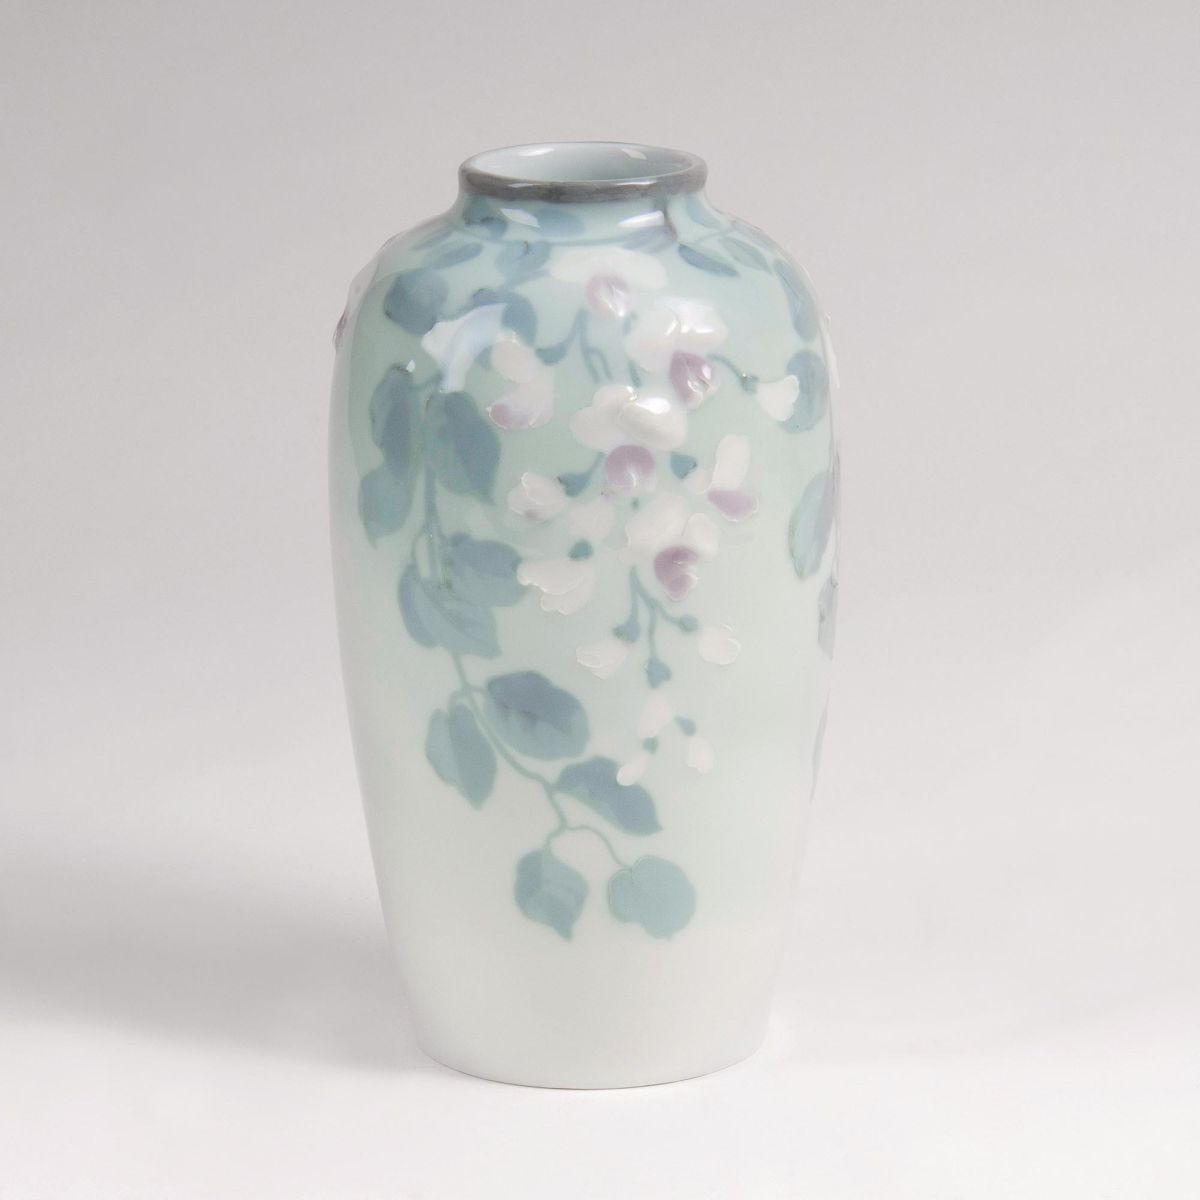 An Art Nouveau Vase with Wisteria